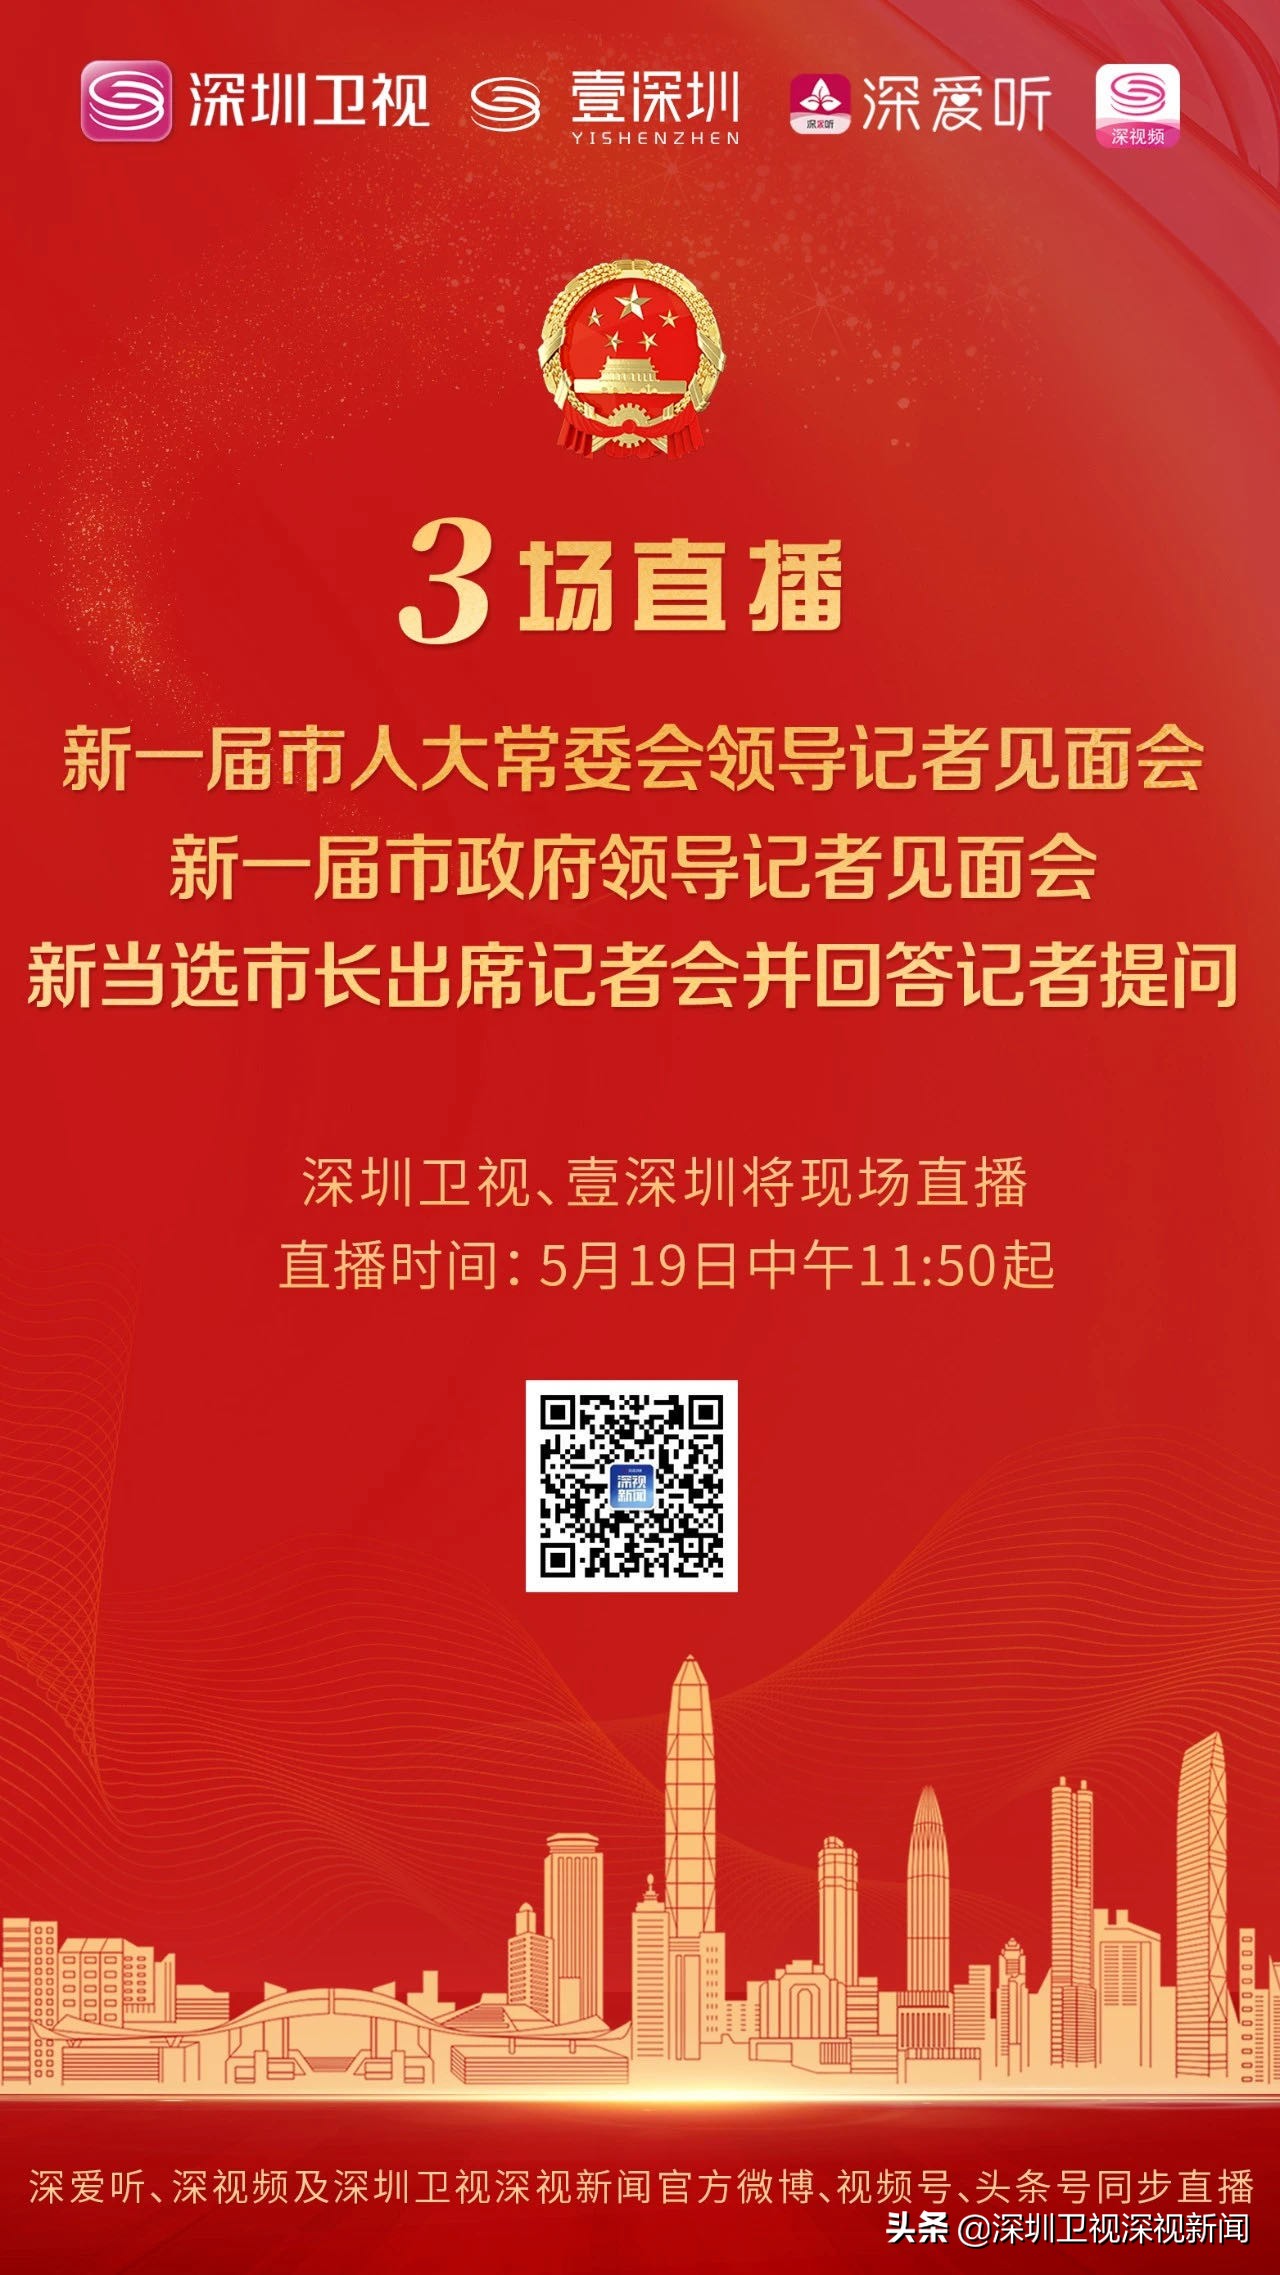 明天，新任市长将产生，深圳卫视将现场直播三场见面会